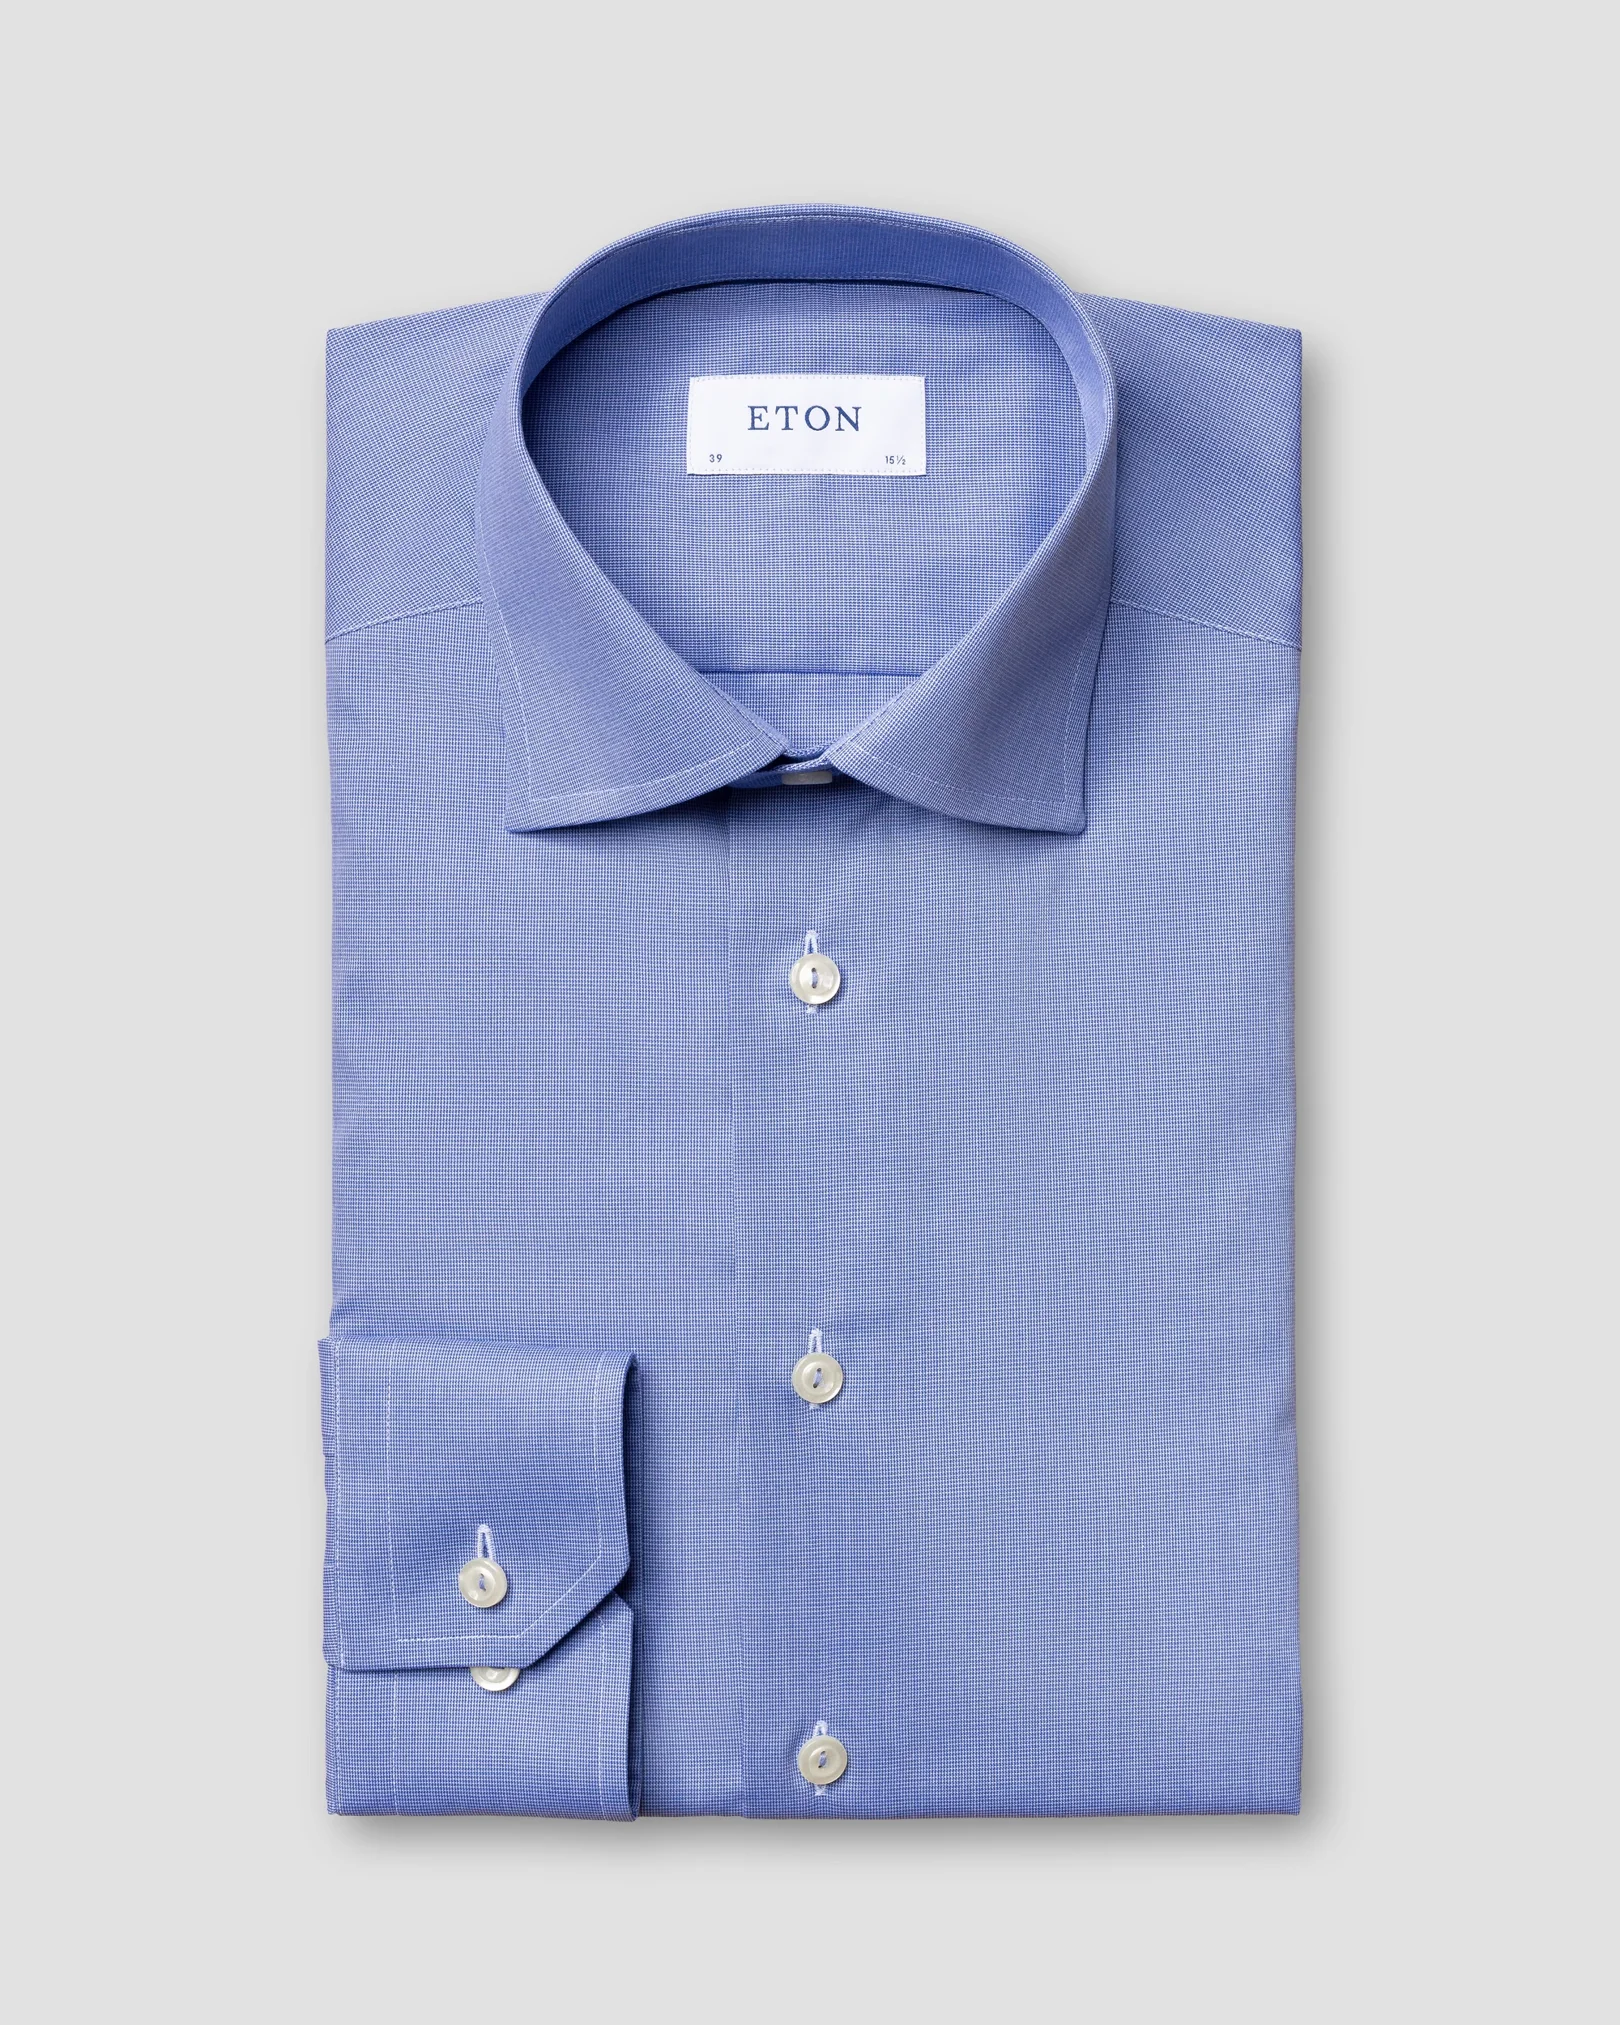 Eton - pastel blue shirt navy details